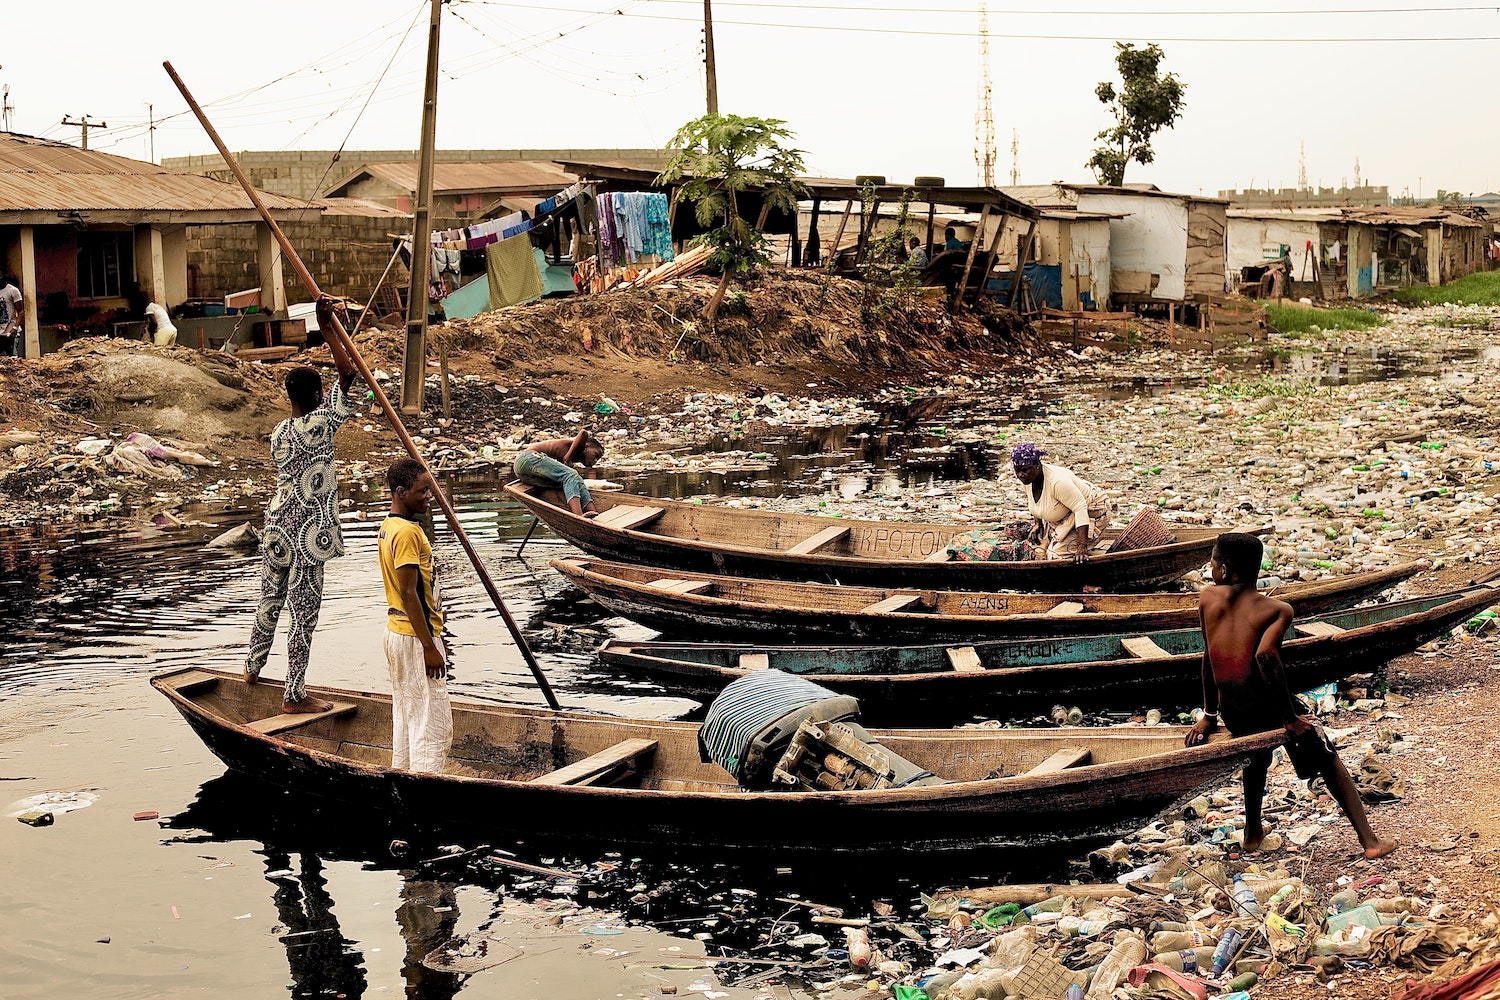 Plastic pollution in Accra